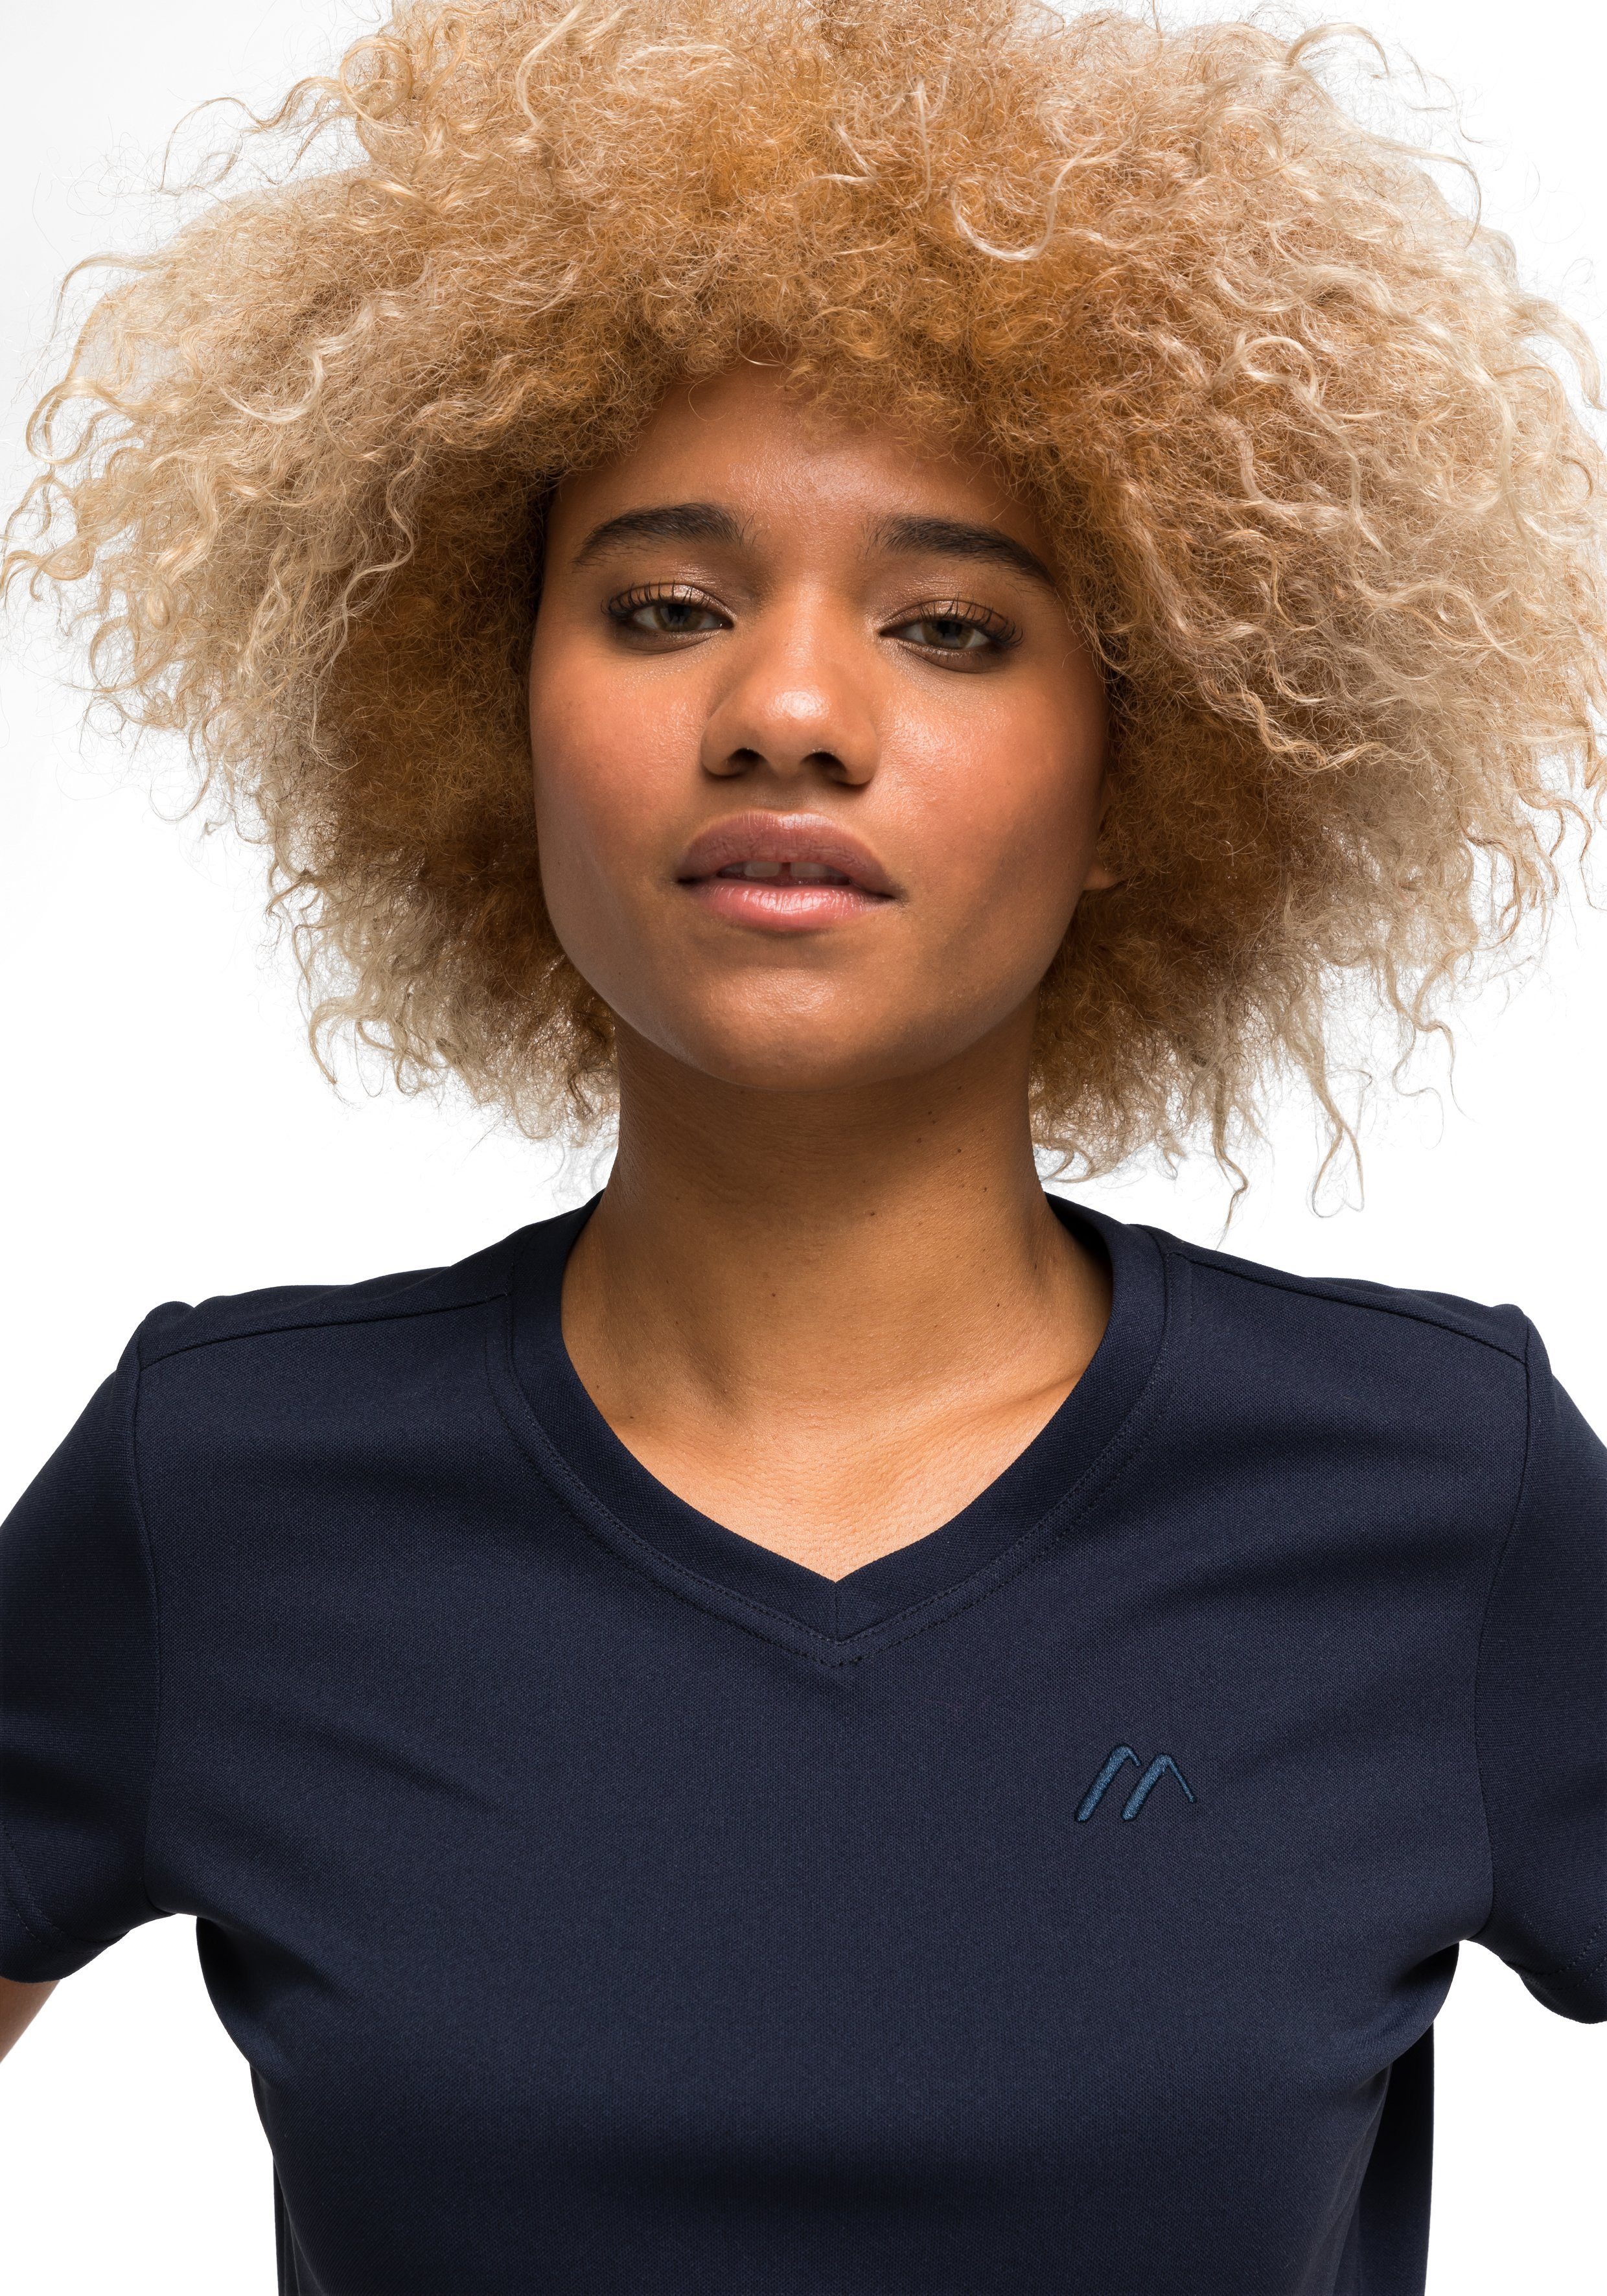 Sports Kurzarmshirt Damen Funktionsshirt und Maier für Freizeit Trudy Wandern dunkelblau T-Shirt,